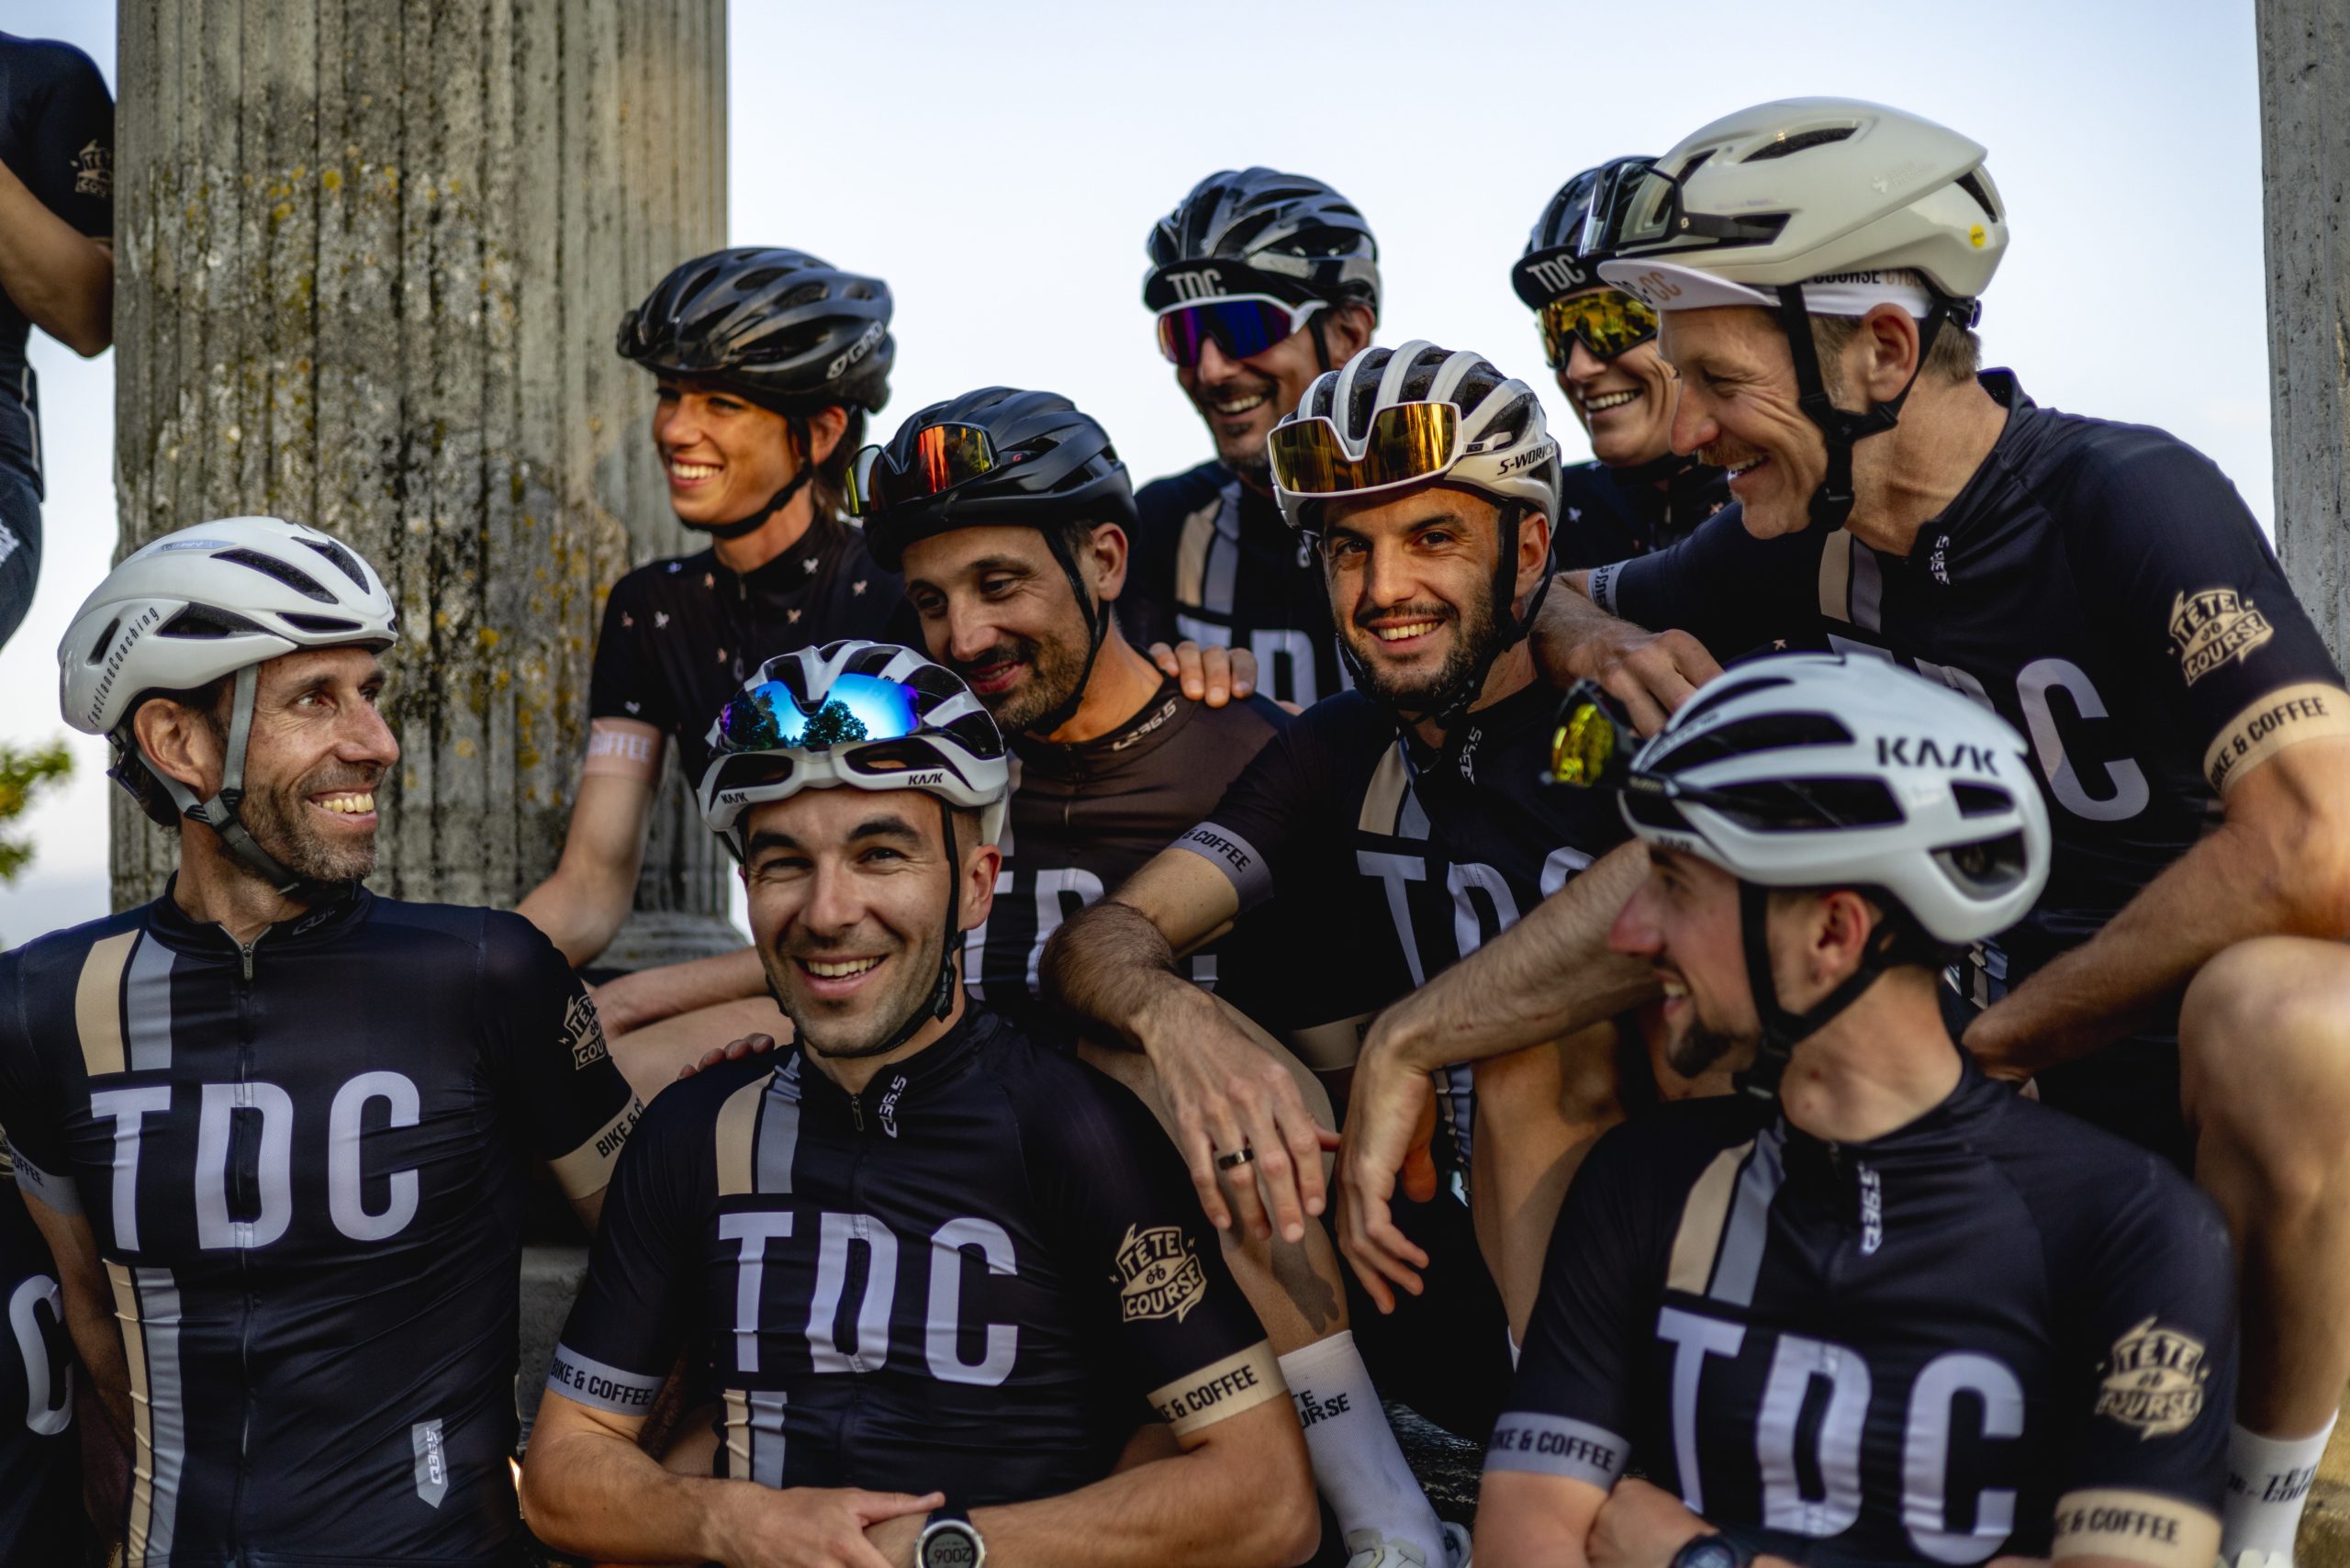 TDC Cycling Club